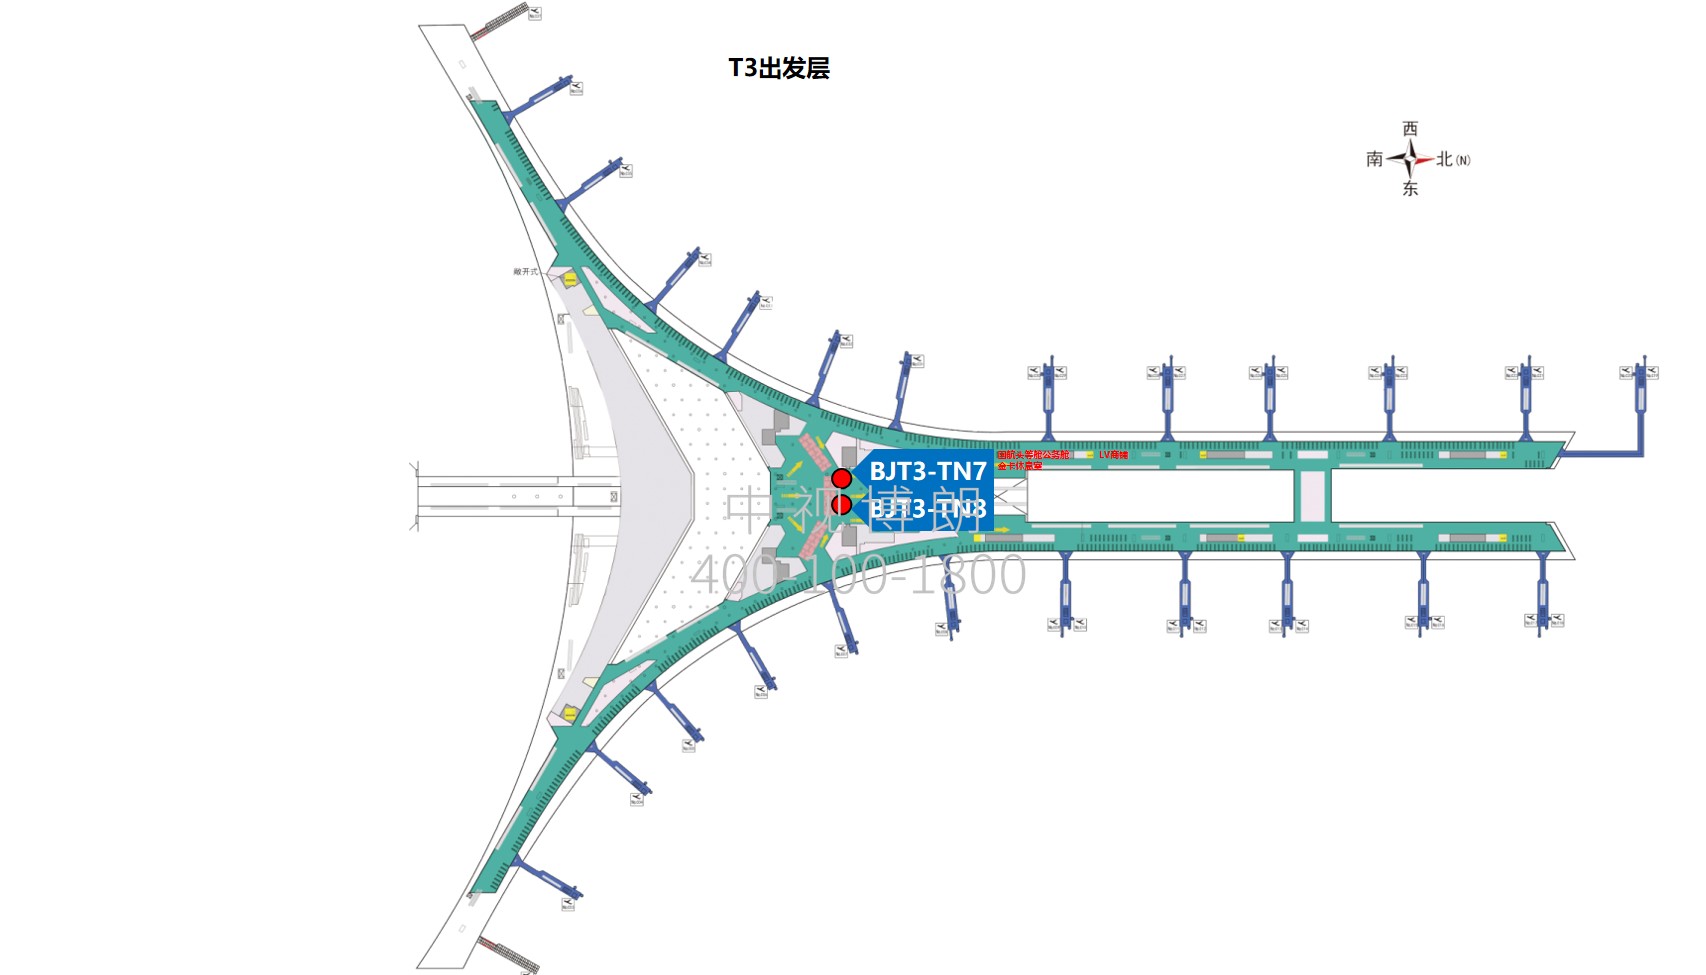 北京首都机场广告-T3国内安检后图腾灯箱套装位置图